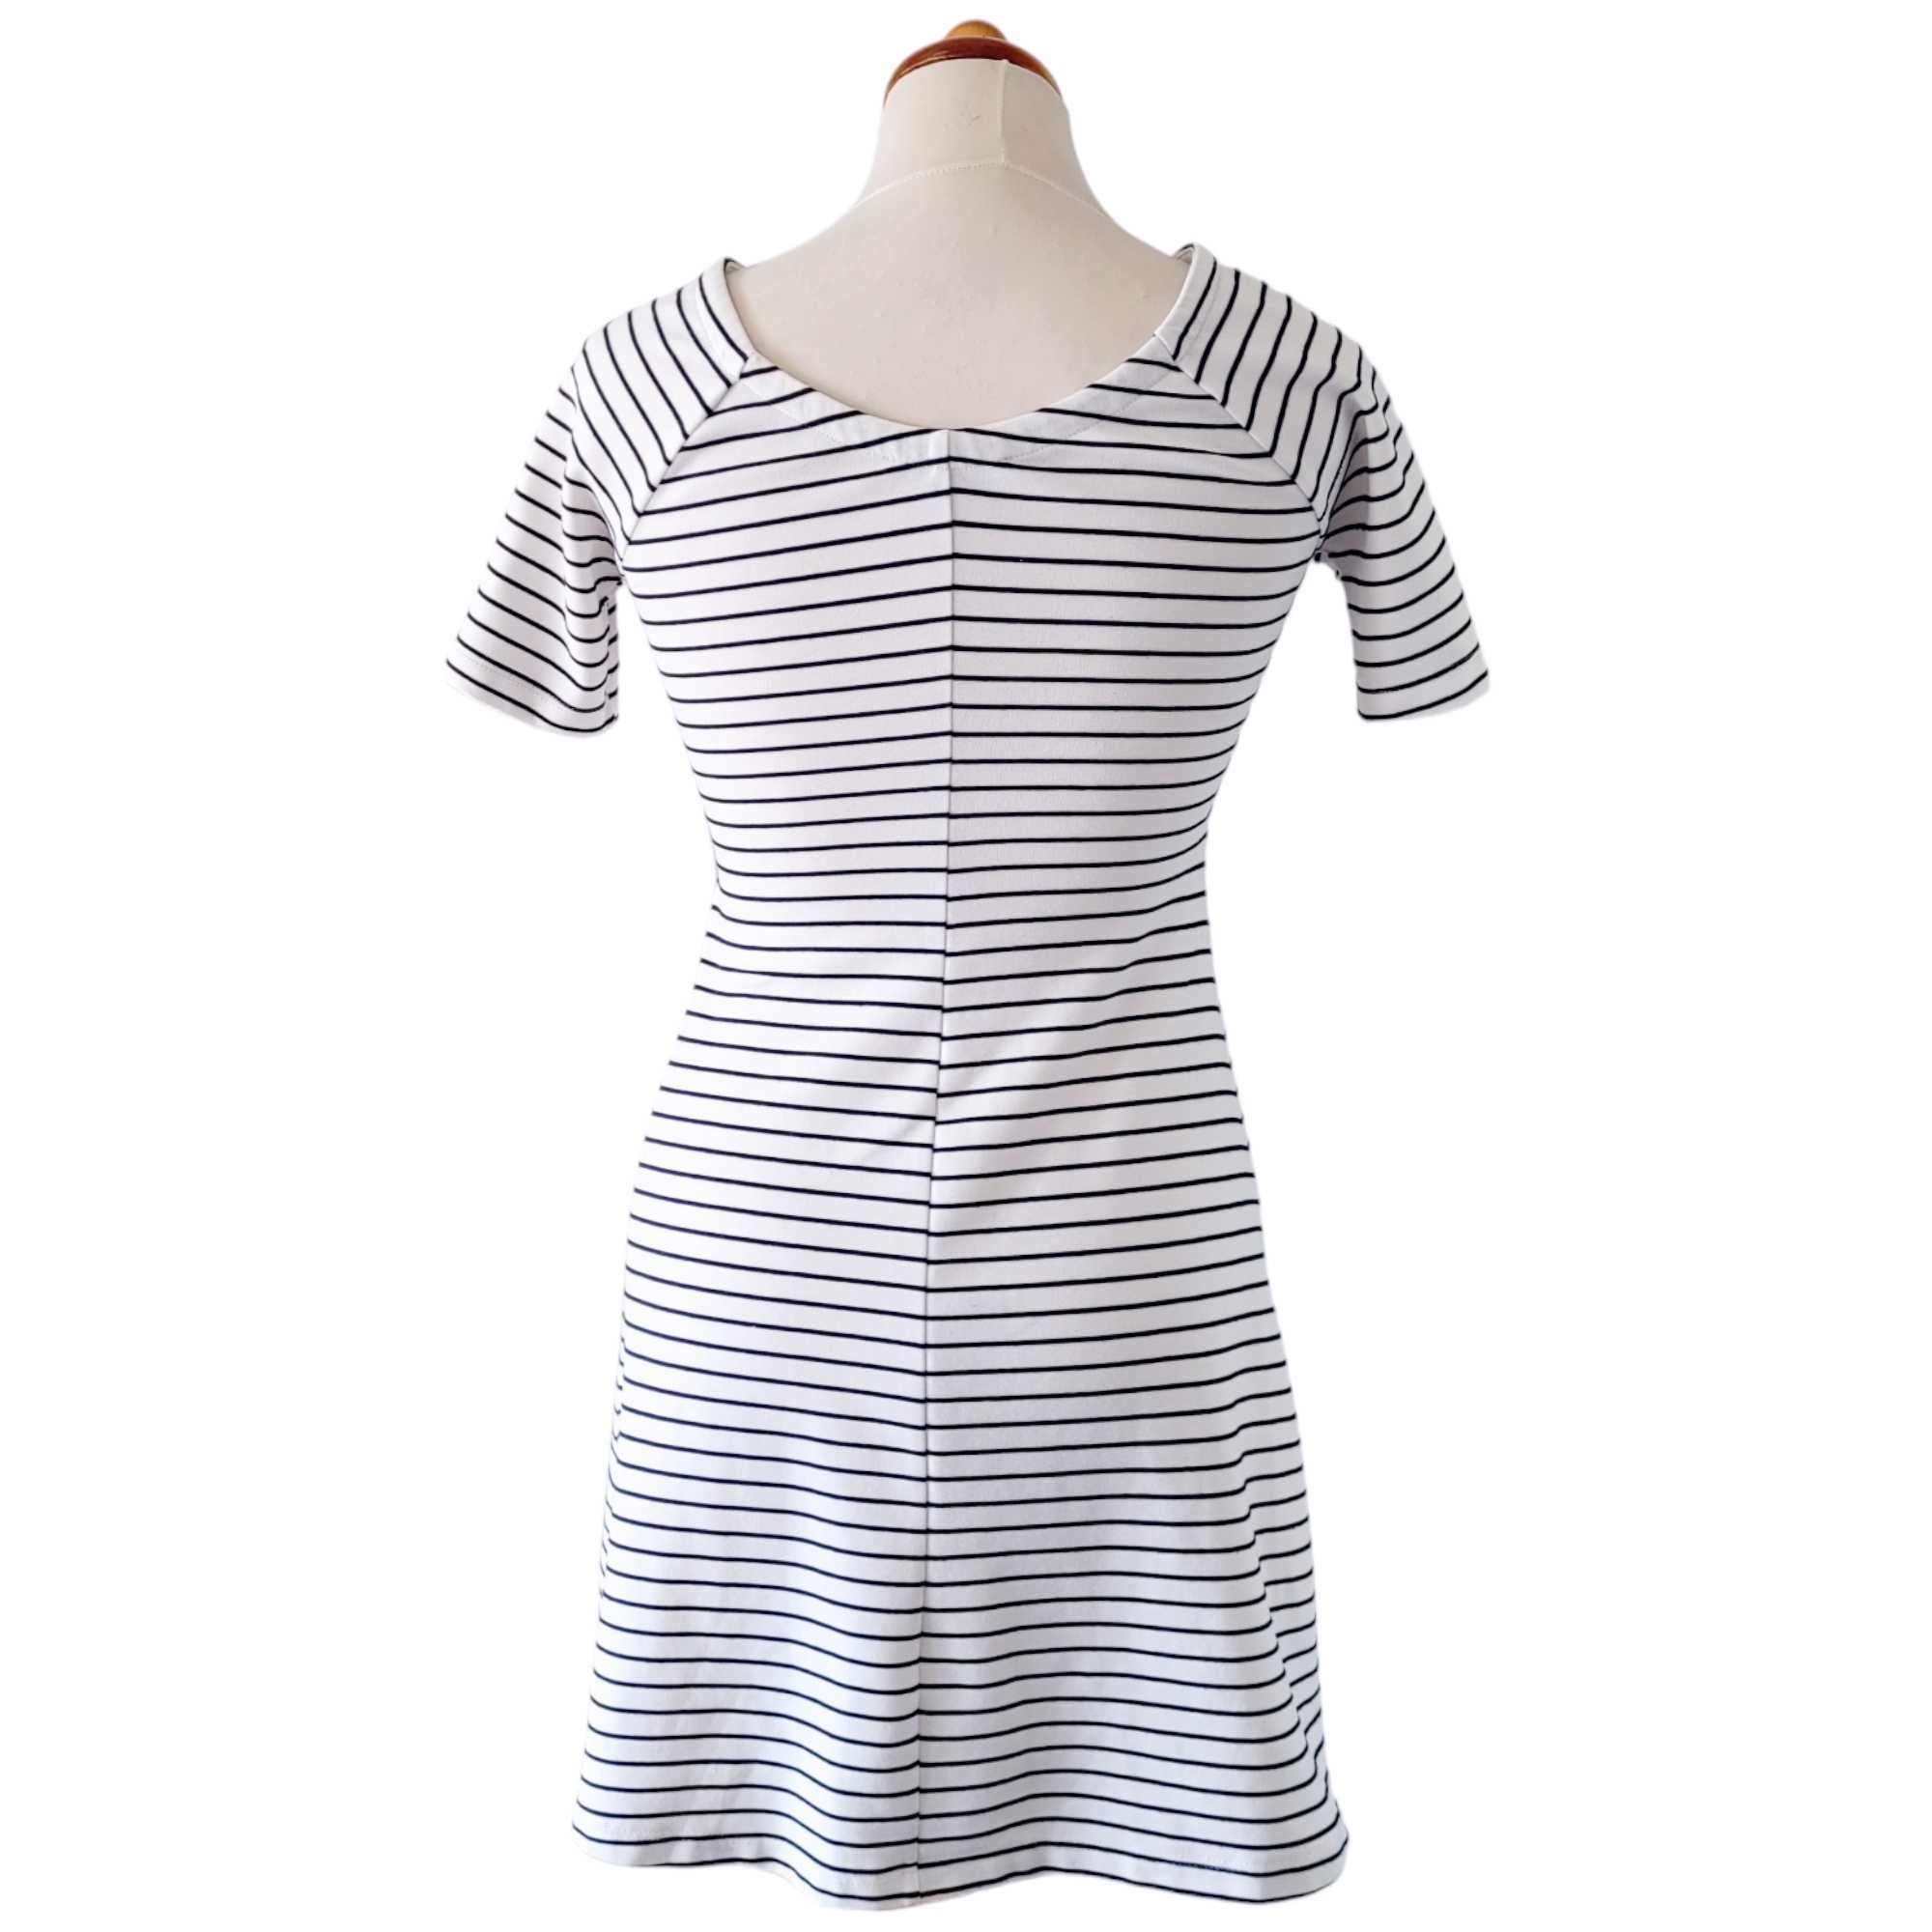 Biała czarna sukienka w paski S Zara dopasowana minimalistyczna lato